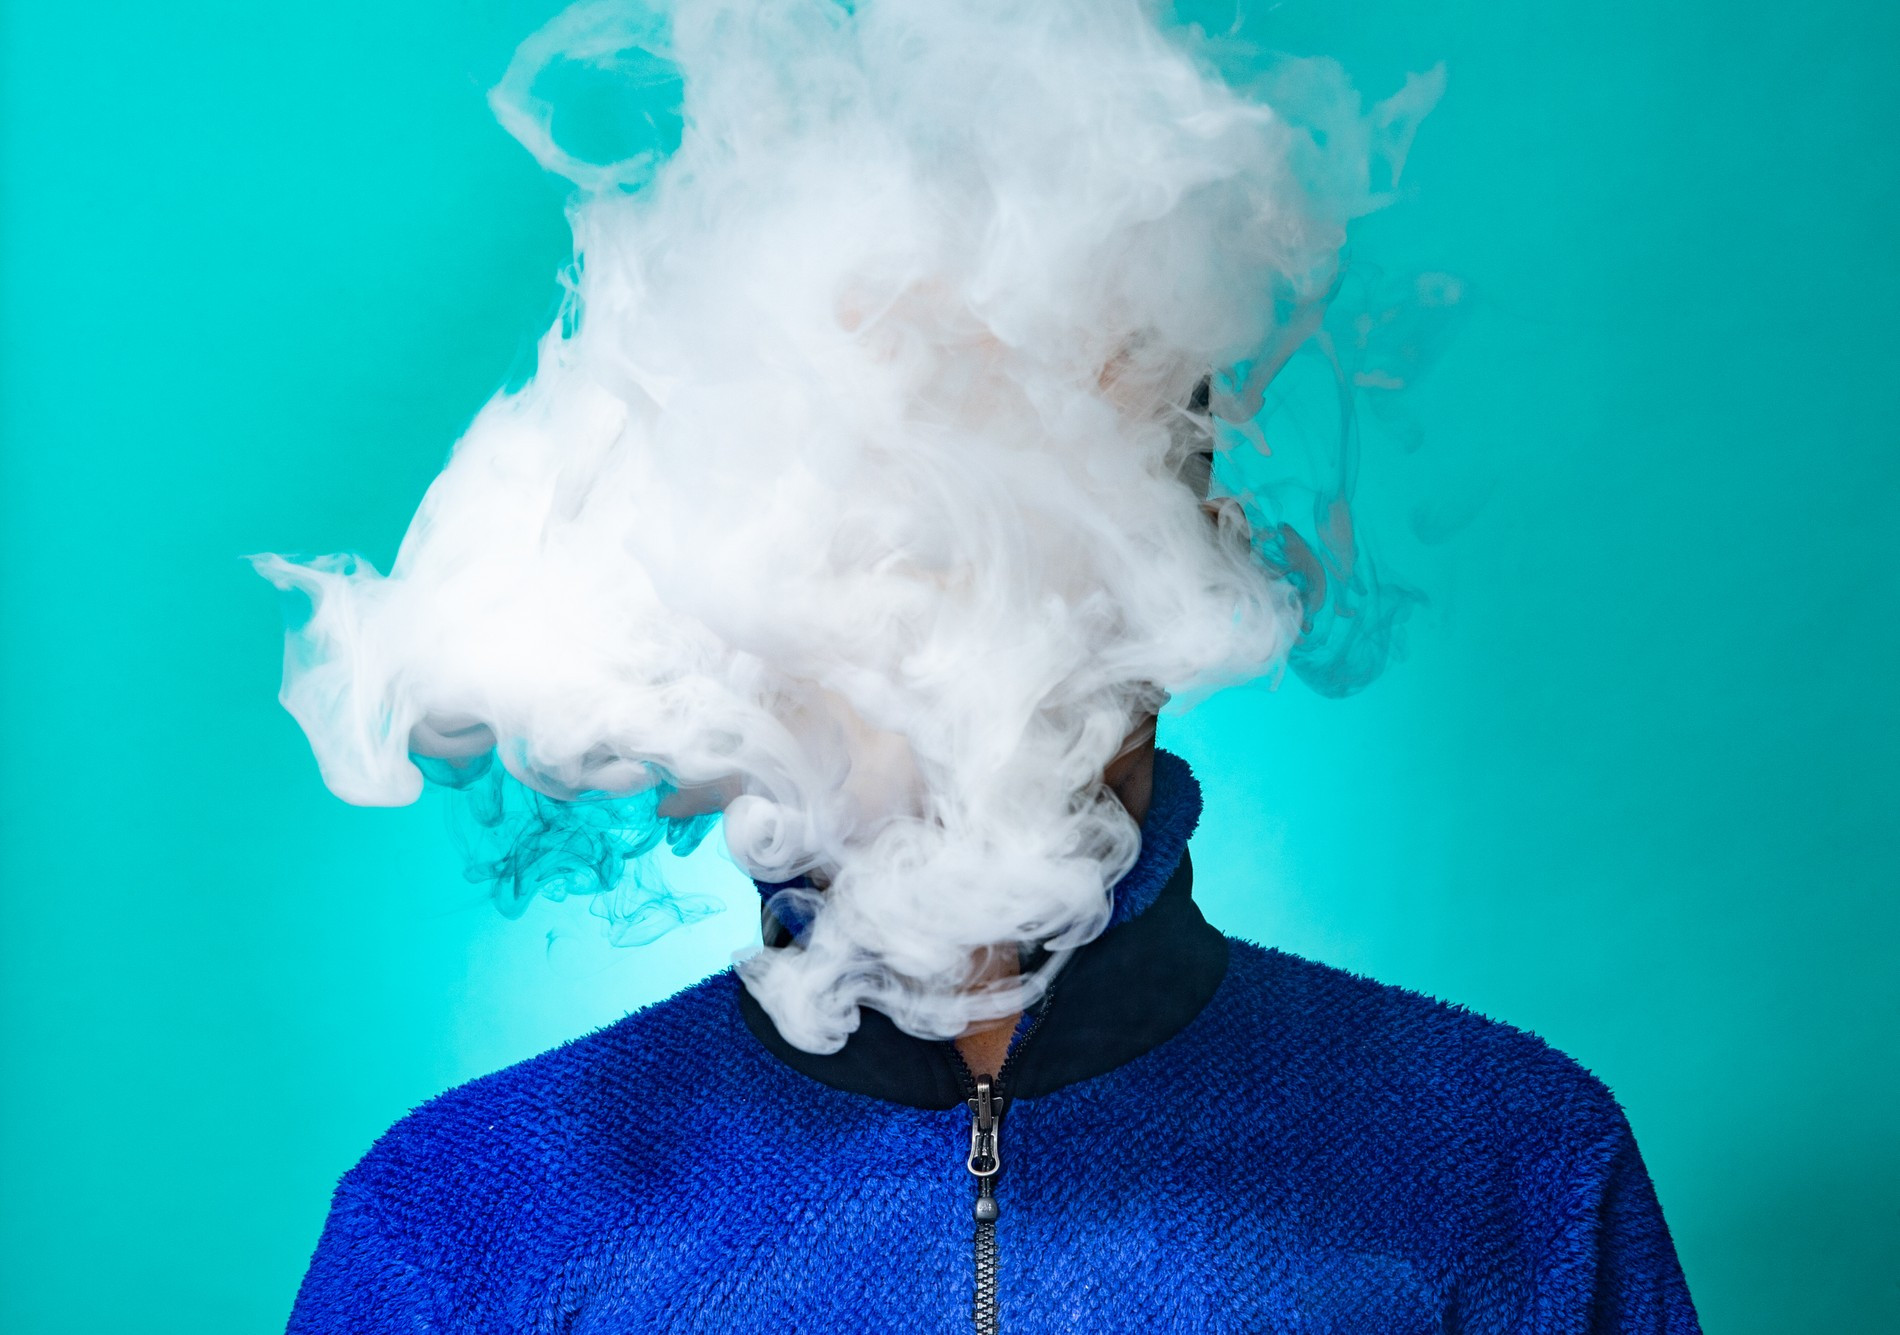 Выкуривая одну сигарету, человек получает 1,1-6 мг никотина, а также контактирует с раскаленными продуктами сгорания табака и бумаги. Фото: Getty Images